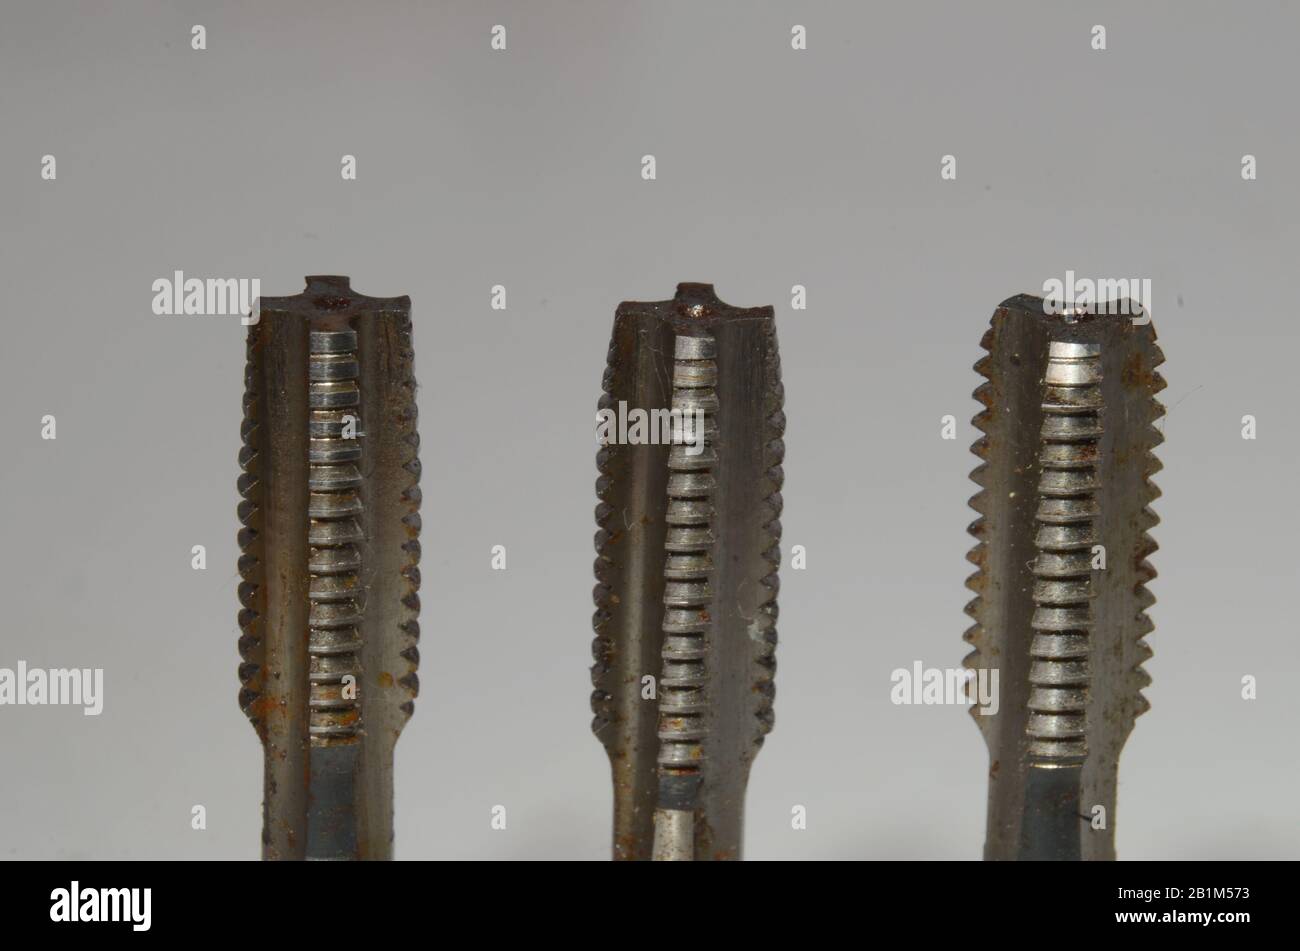 Chiudere il set di maschi filettati M8 con maschiatura conica a sinistra, secondo maschiatura al centro e rubinetto inferiore a destra. Foto Stock